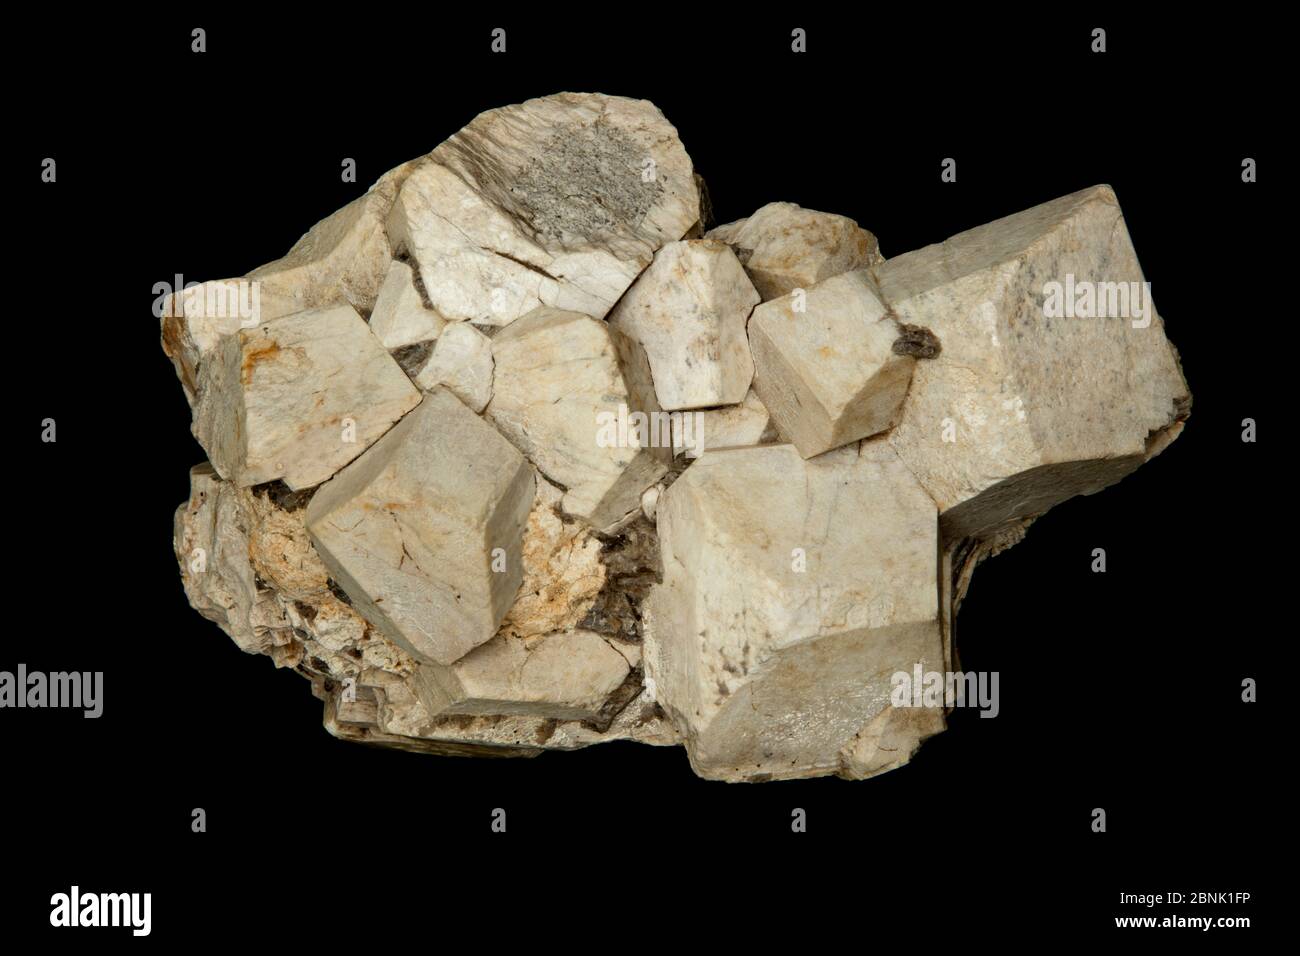 Feldspatkristalle, Orthoklase oder Orthoklase Feldspat (Endgliedformel KAlSi3O8), ein Tektosilikat-Mineral, das igneous Gestein bildet, Montana, USA Stockfoto